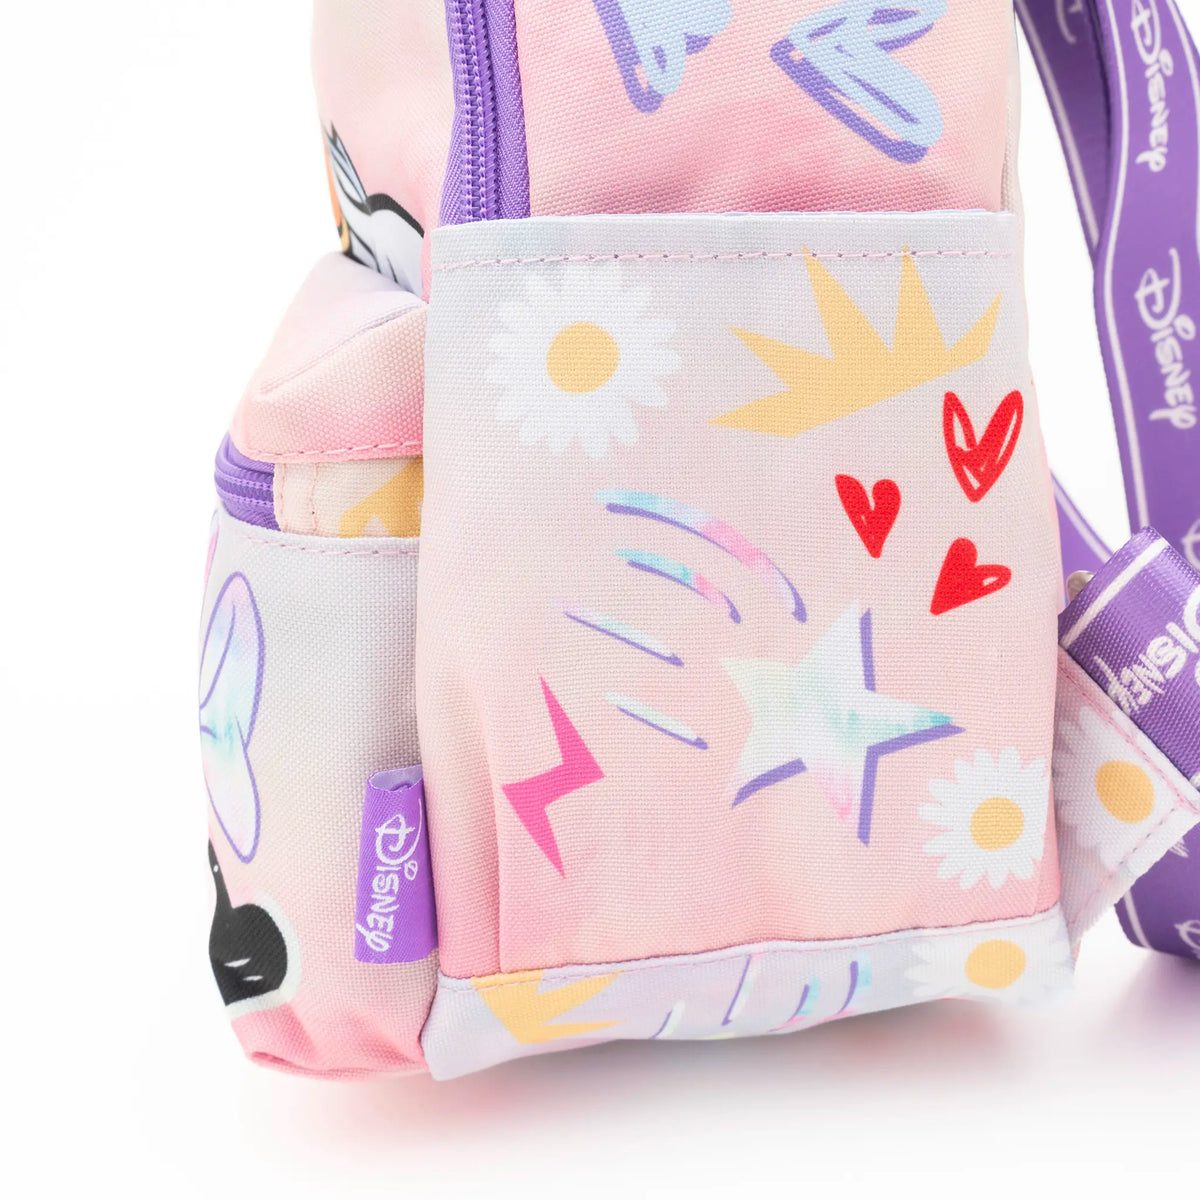 Disney Daisy Duck Park Day Nylon Mini Backpack